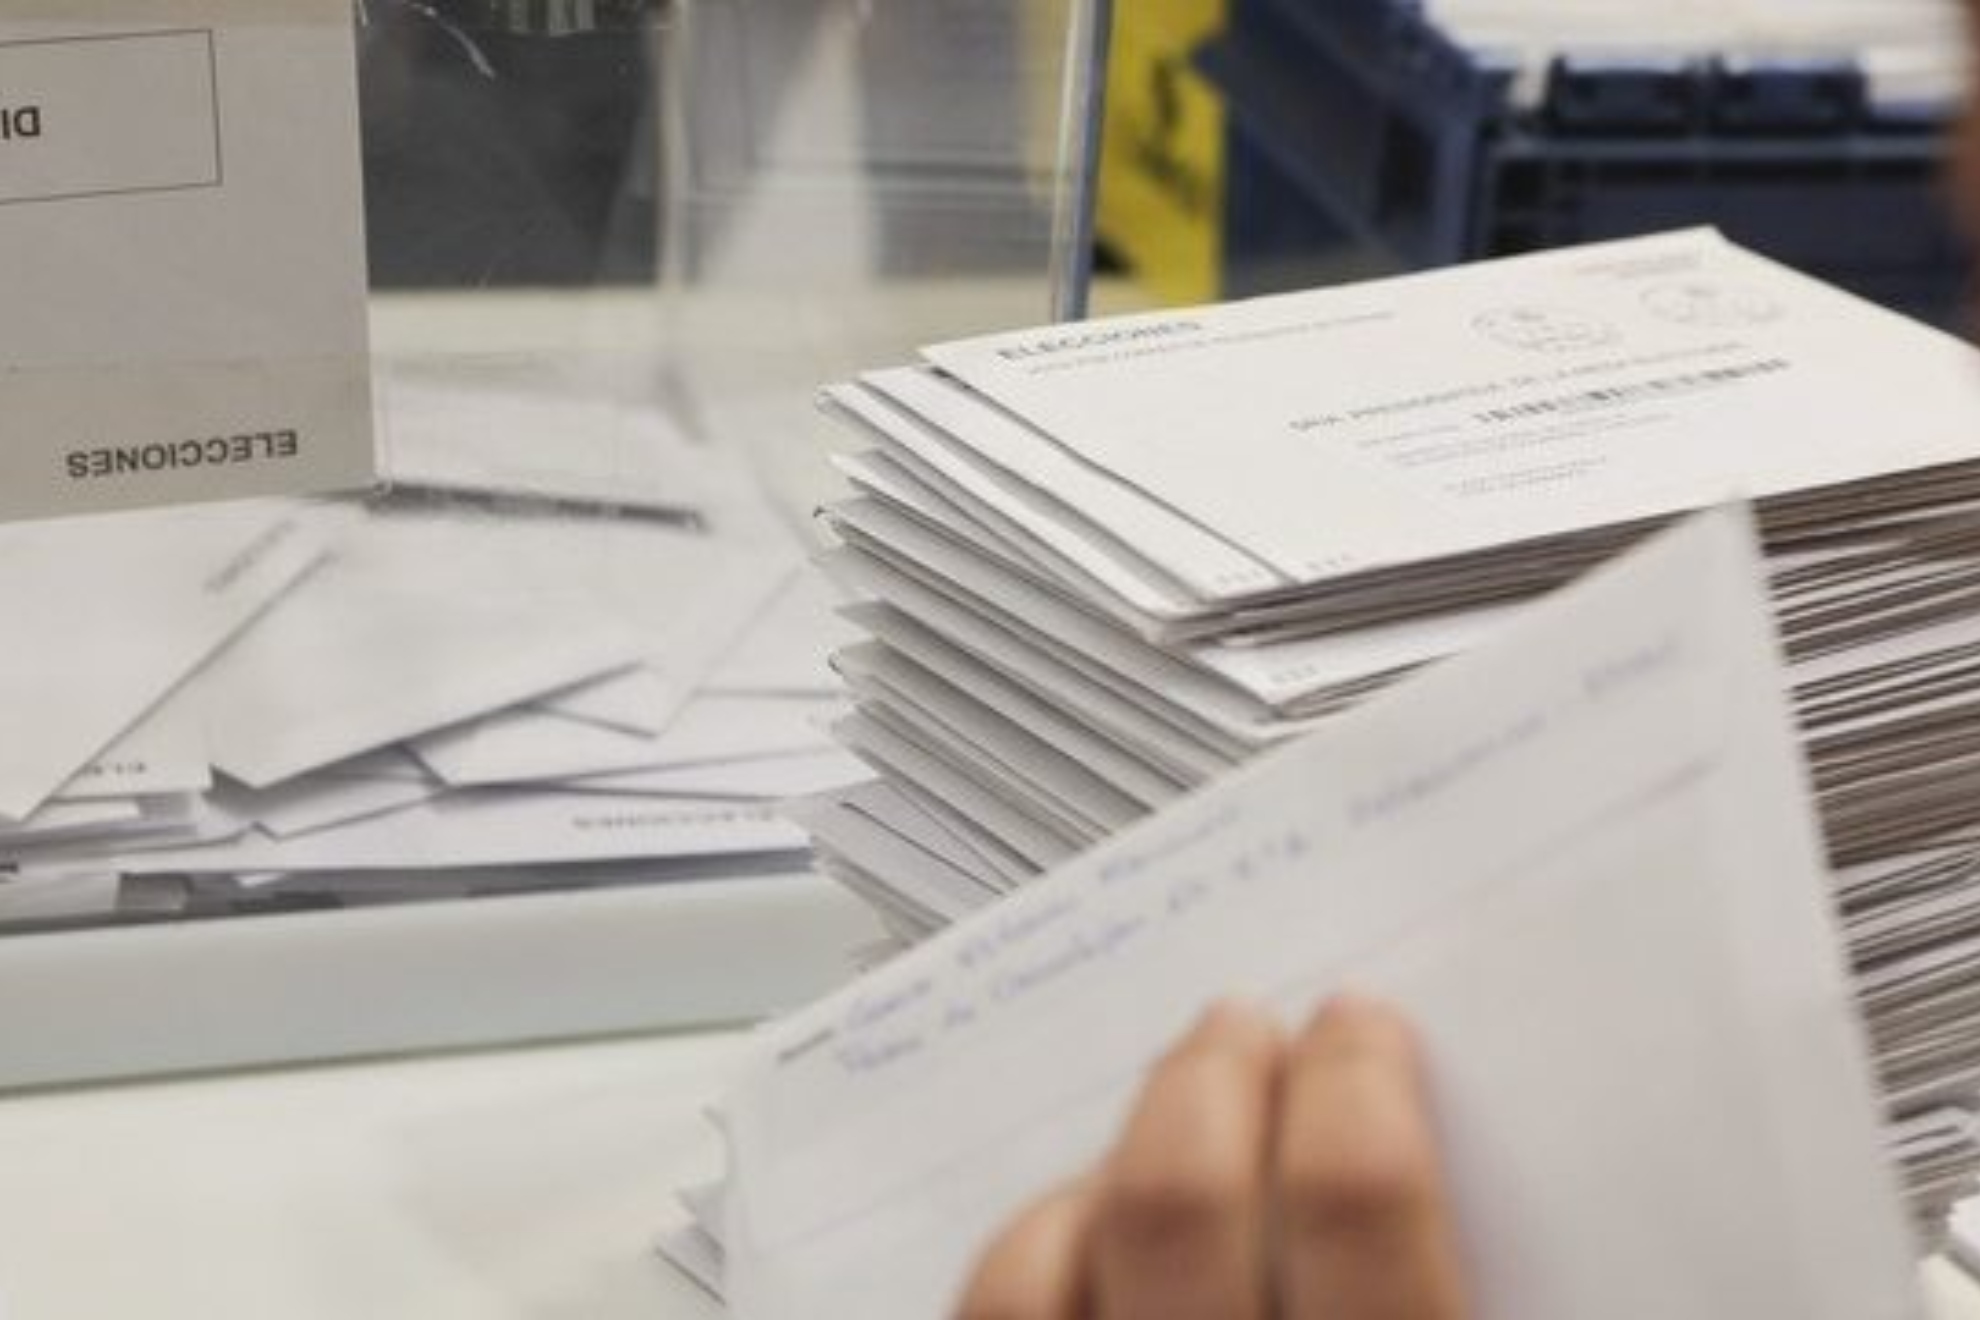 La Junta Electoral rechaza el recurso del PSOE para revisar los votos nulos del 23-J.